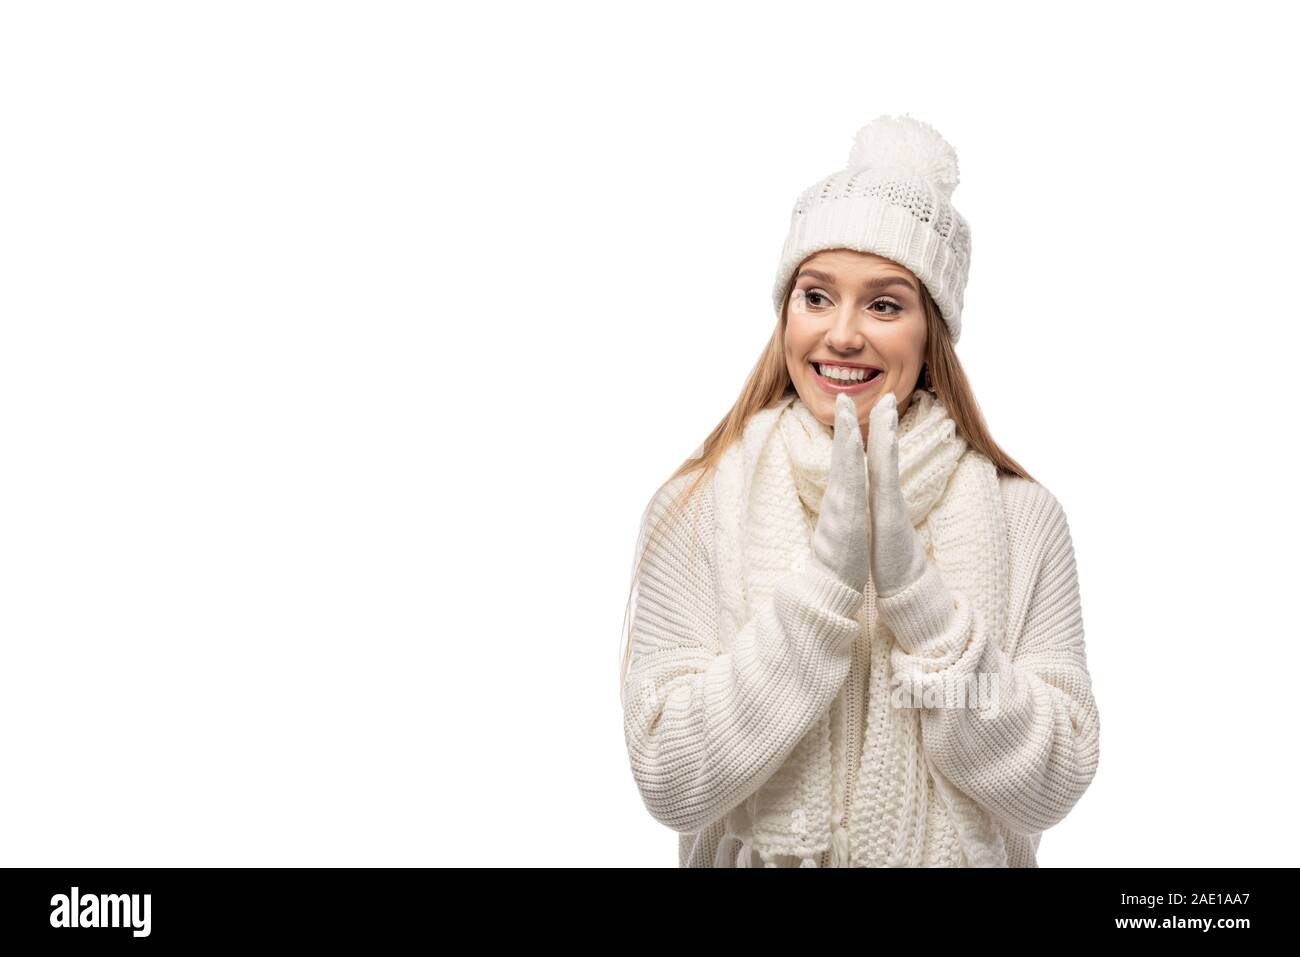 Bella ragazza eccitato battendo le mani di bianco vestiti a maglia, isolato su bianco Foto Stock